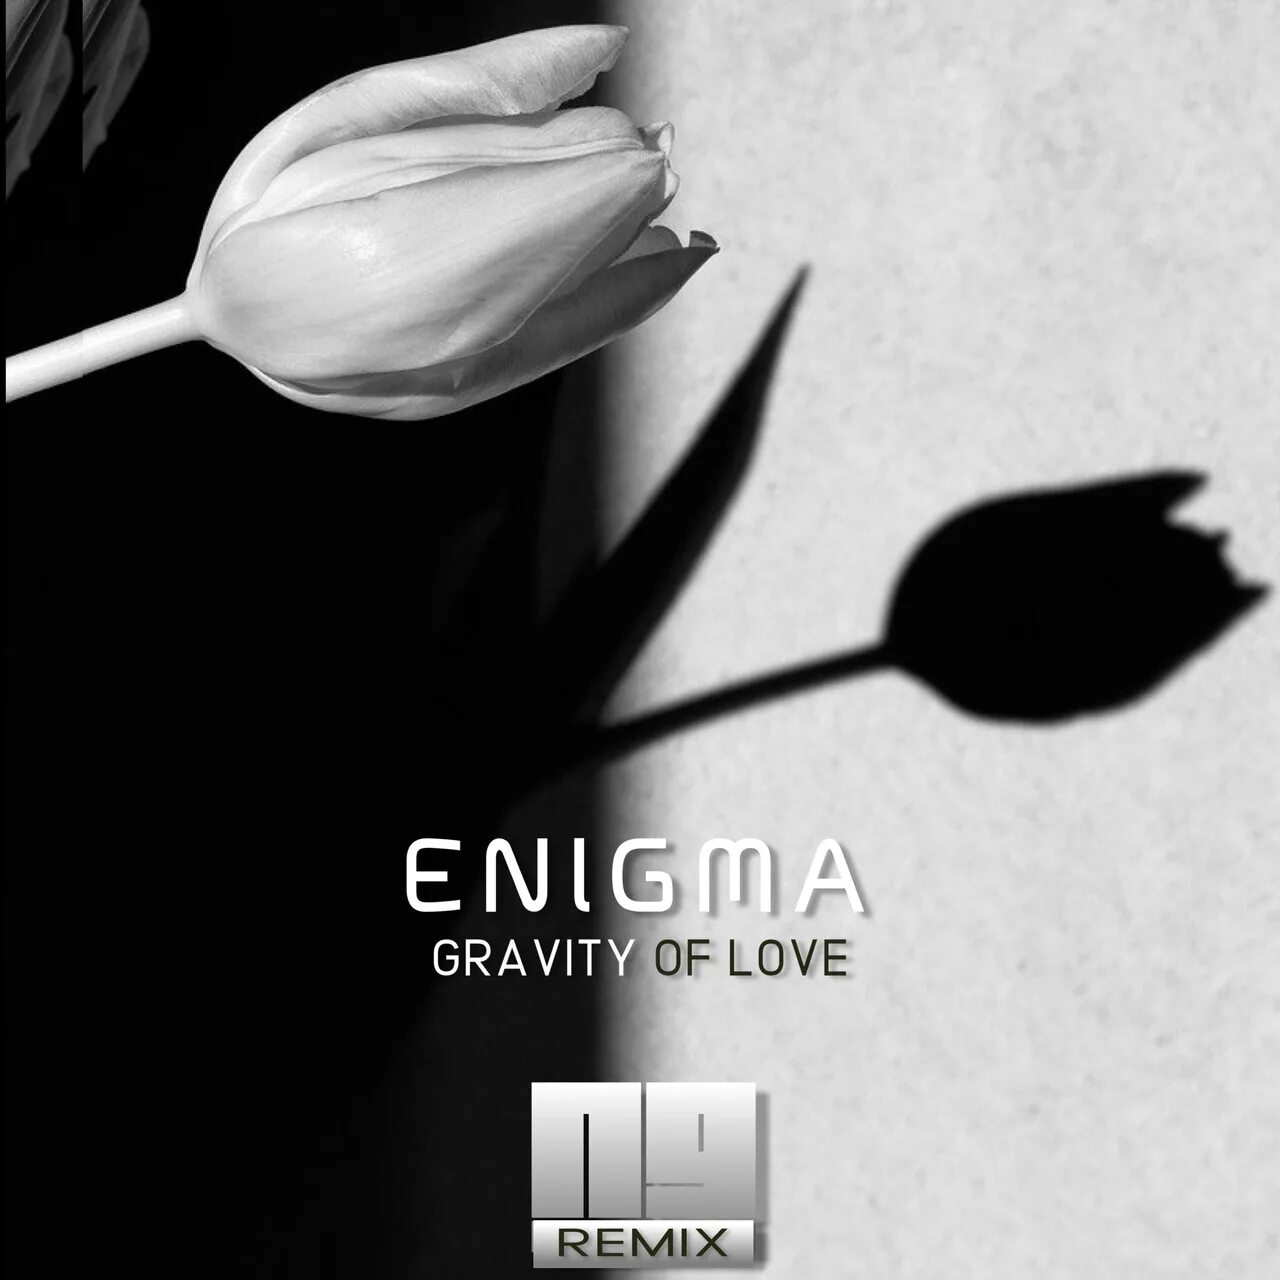 Enigma remix mp3. Enigma - Gravity of Love 1999. Гравити оф лав Энигма. Gravity of Love Enigma треки. Enigmatic Graves.